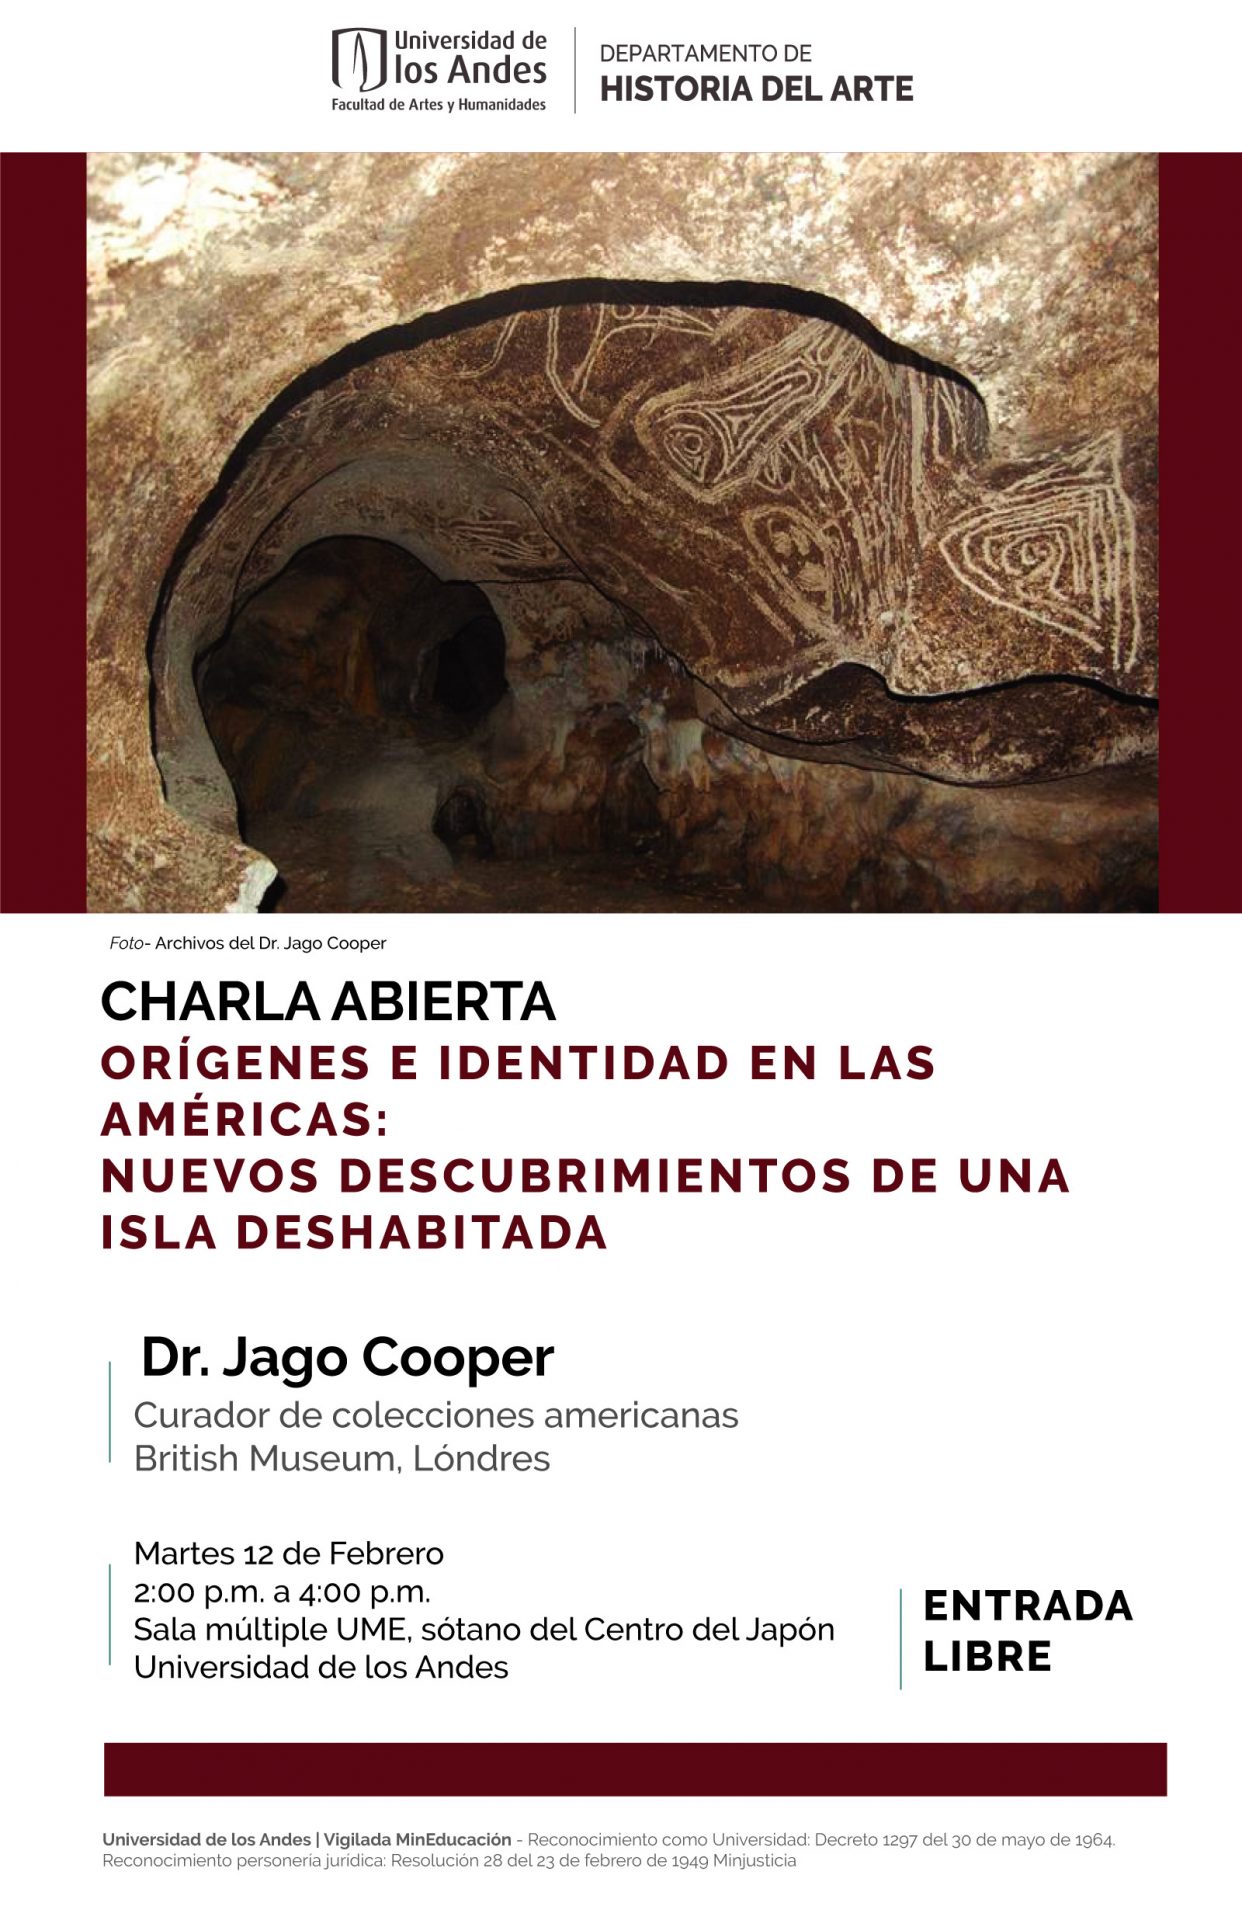 Charla Orígenes e identidad en las Américas: nuevos descubrimientos de una isla deshabitada